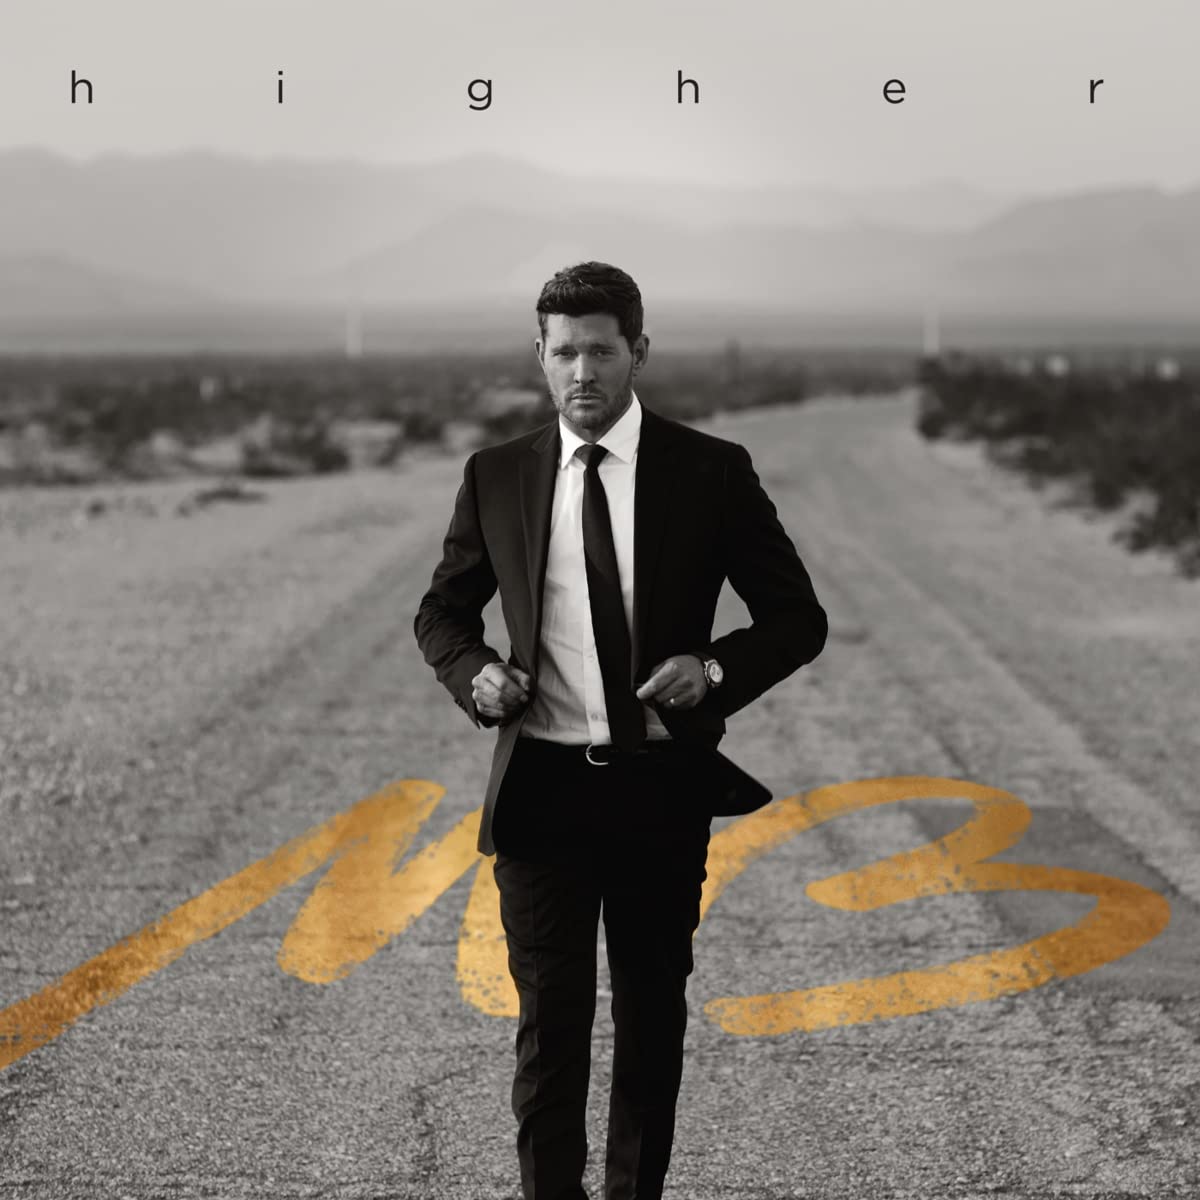 Trenutno pregledavate Michael Bublé nastavlja šarmirati publiku novim albumom “Higher”